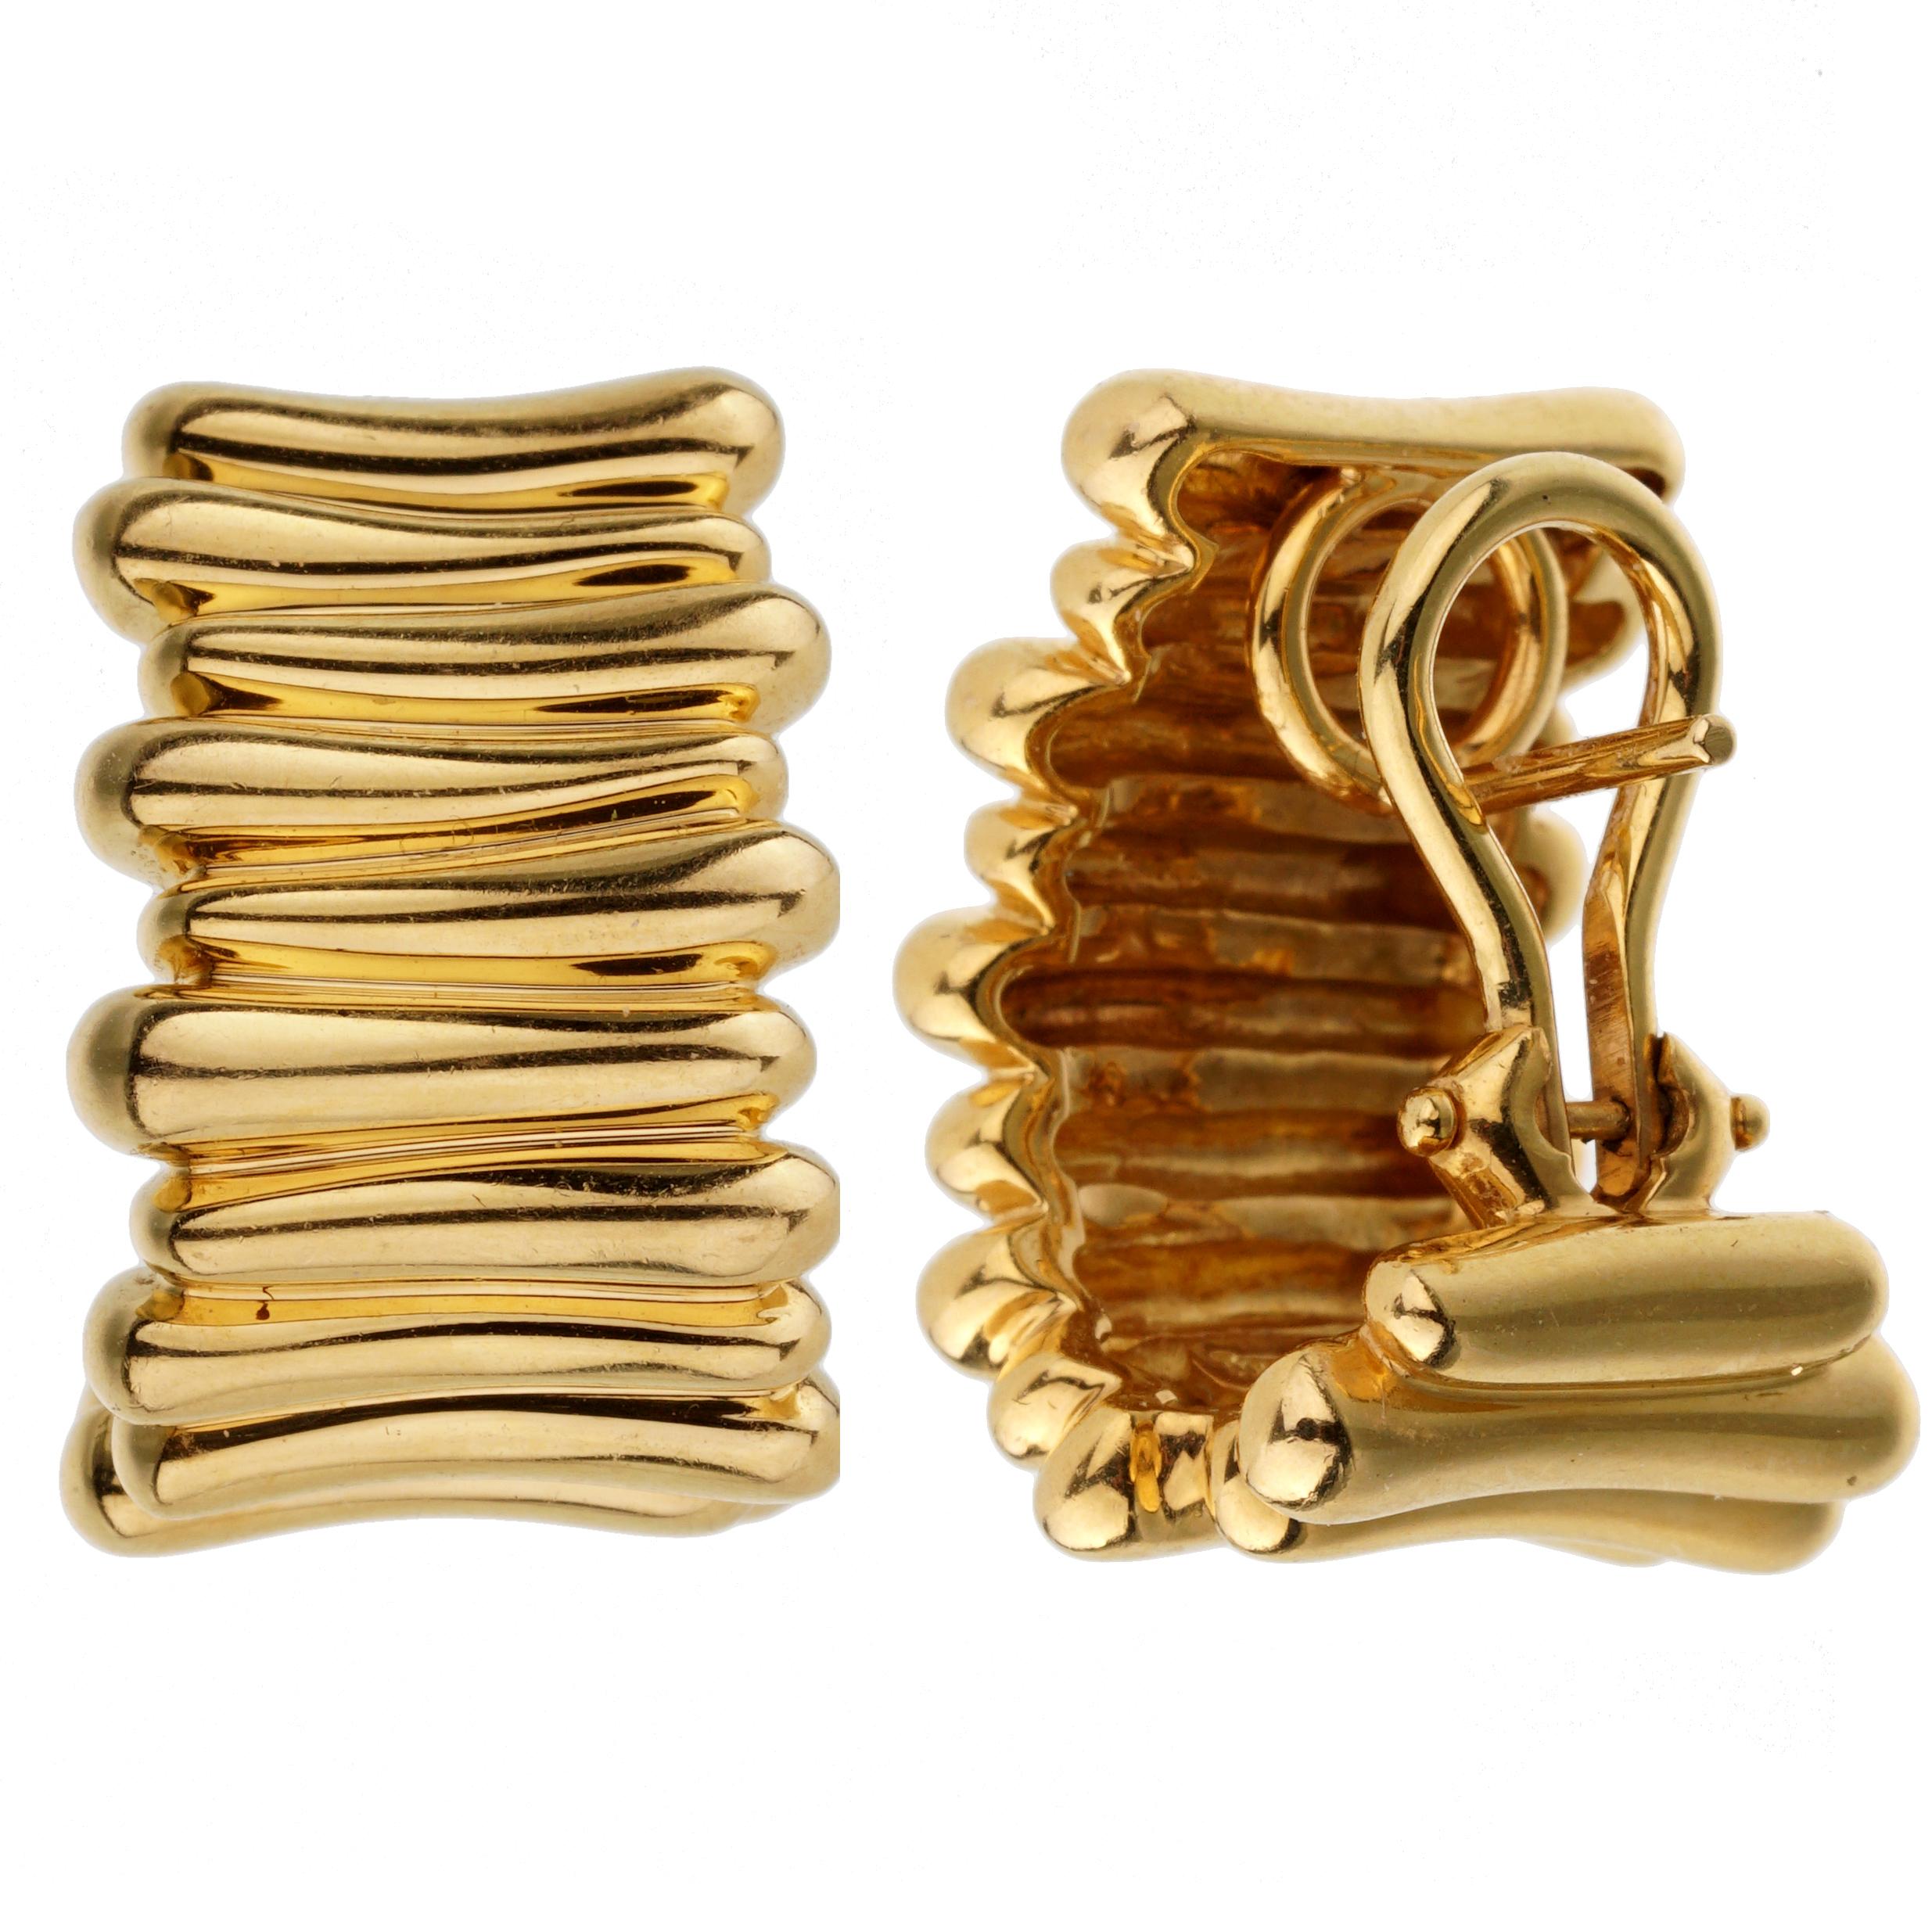 Un ensemble intrigant de boucles d'oreilles Tiffany & Co présentant un design superposé en or jaune. Les boucles d'oreilles ont une longueur de 0,78